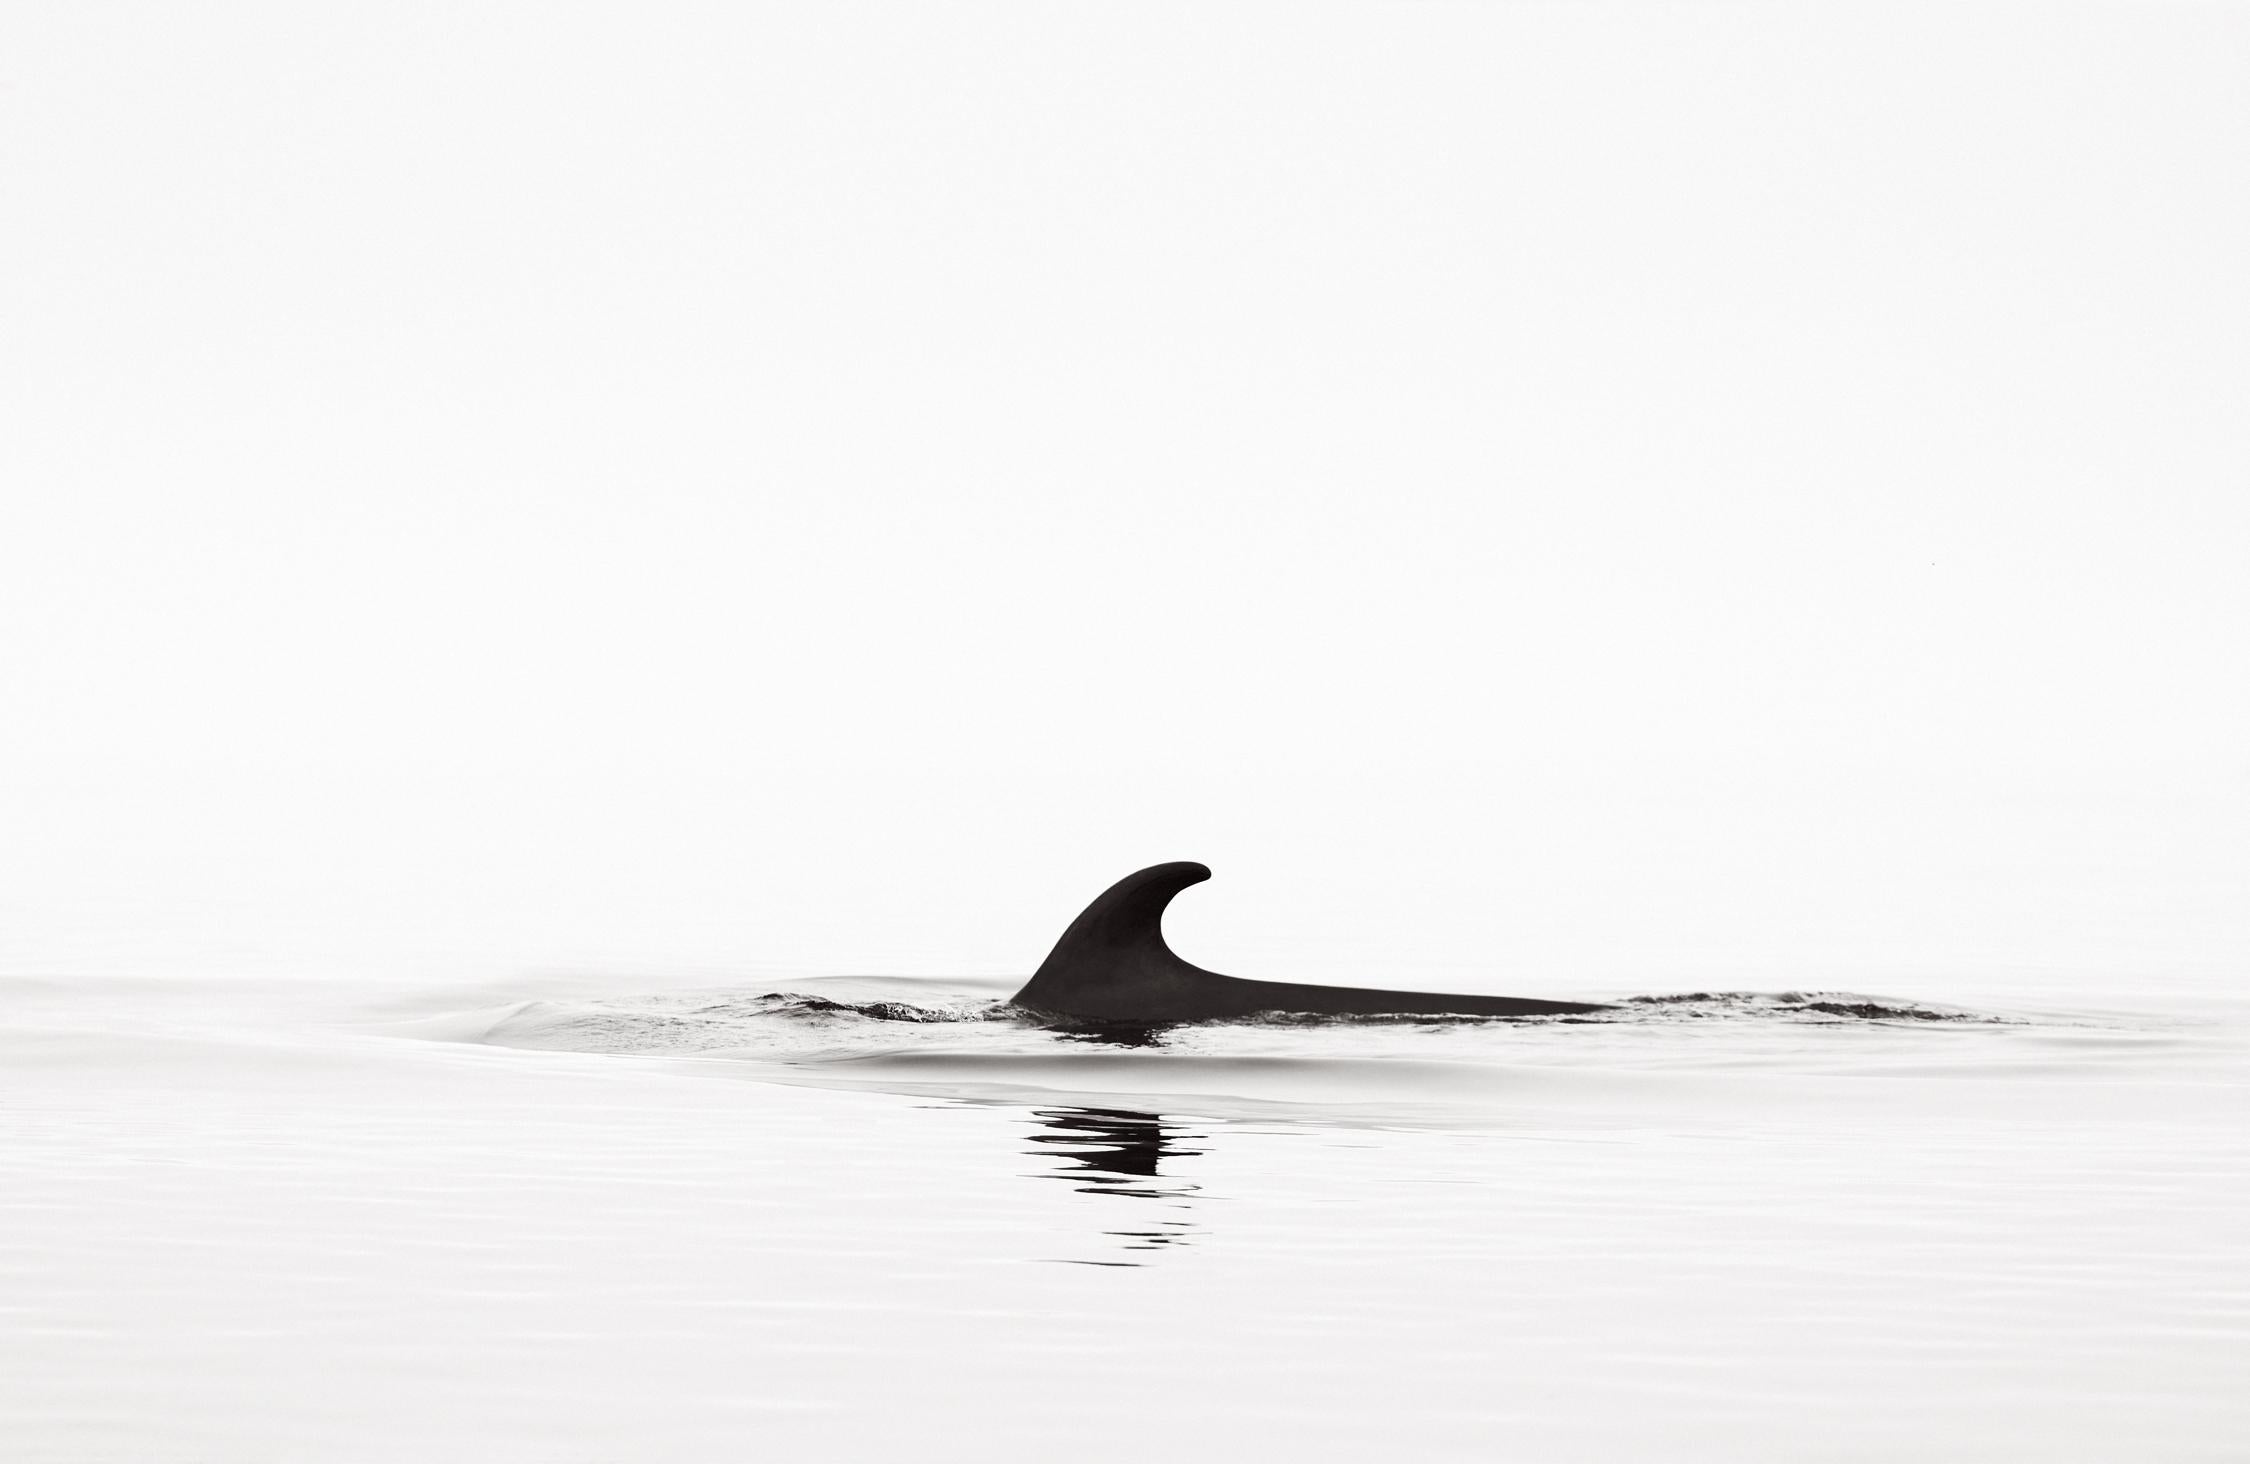 Drew Doggett Black and White Photograph – Minimale, abstrakte Schwarz-Weiß-Fotografie eines Wales beim Surfen